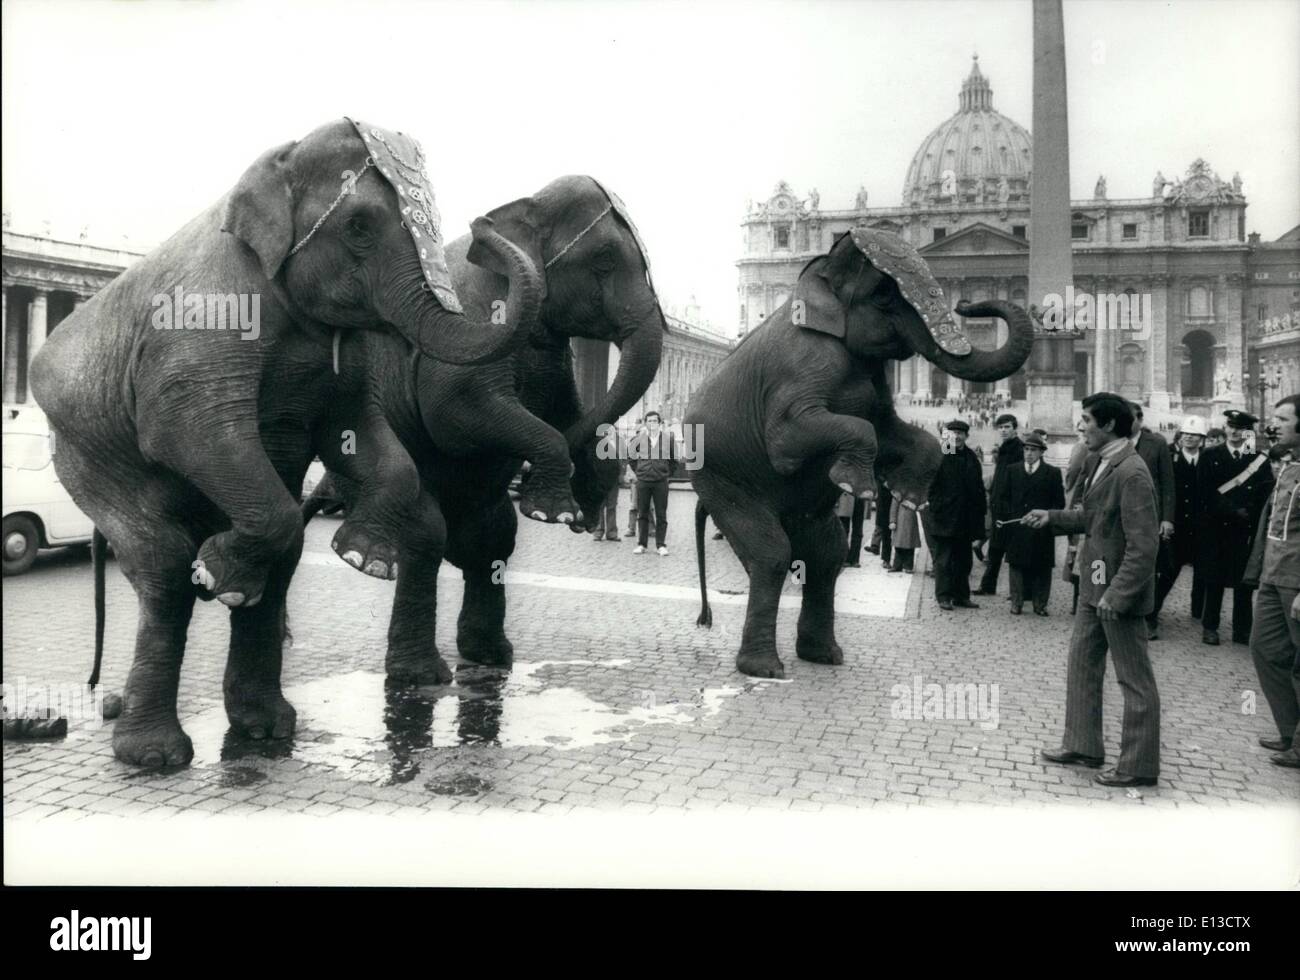 Marzo 02, 2012 - Vaticano 6.0. 73= un grupo de los elefantes del circo americano que está jugando en Roma, marchando por la ciudad en el día de la Epifanía. Se observan en San Pedro Sq. Foto de stock